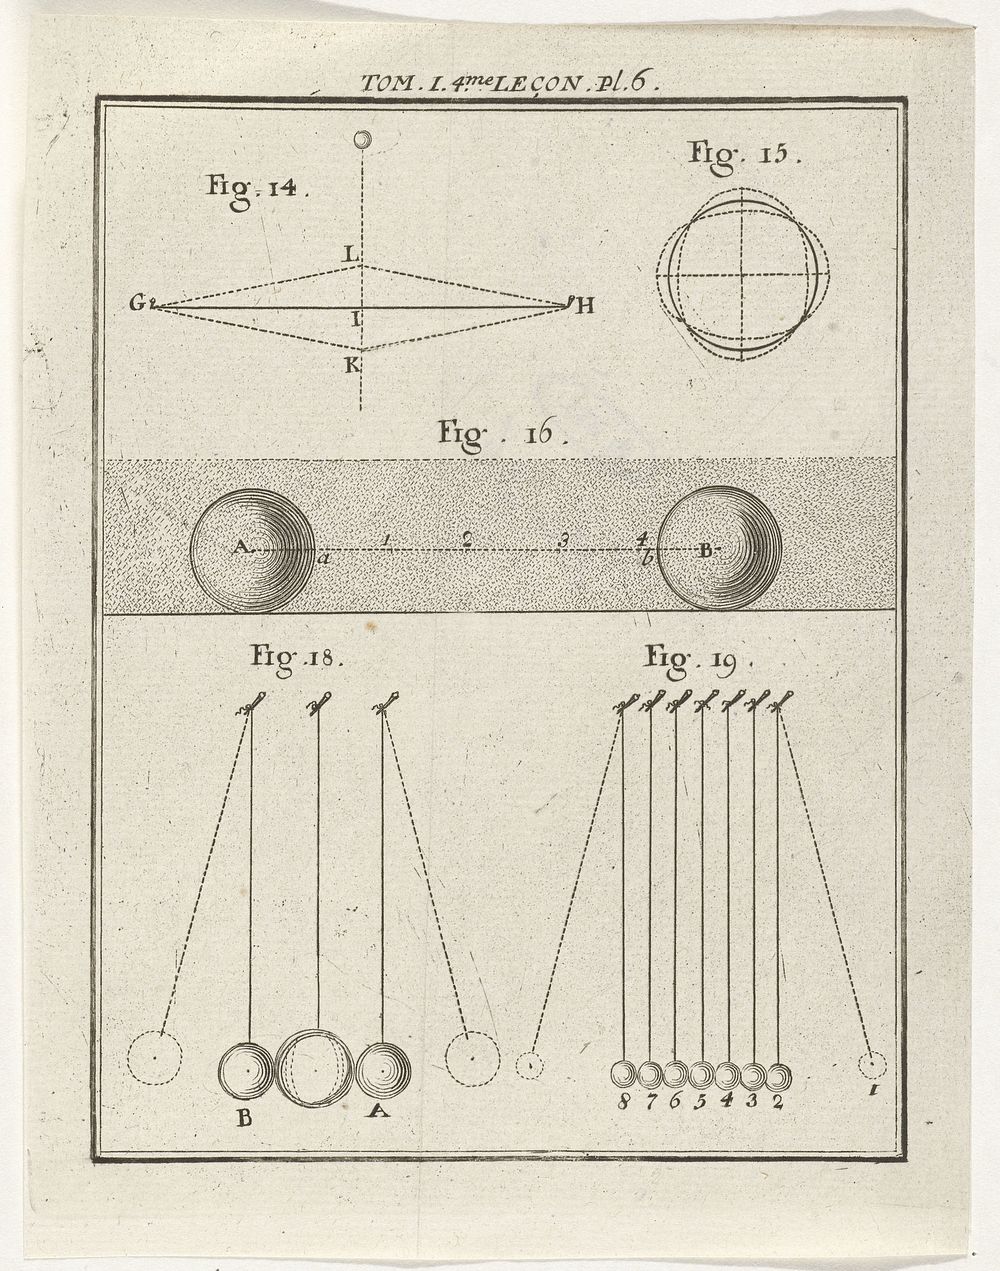 Natuurkundige modellen (1759) by Nicolaas van Frankendaal and Kornelis van Tongerlo